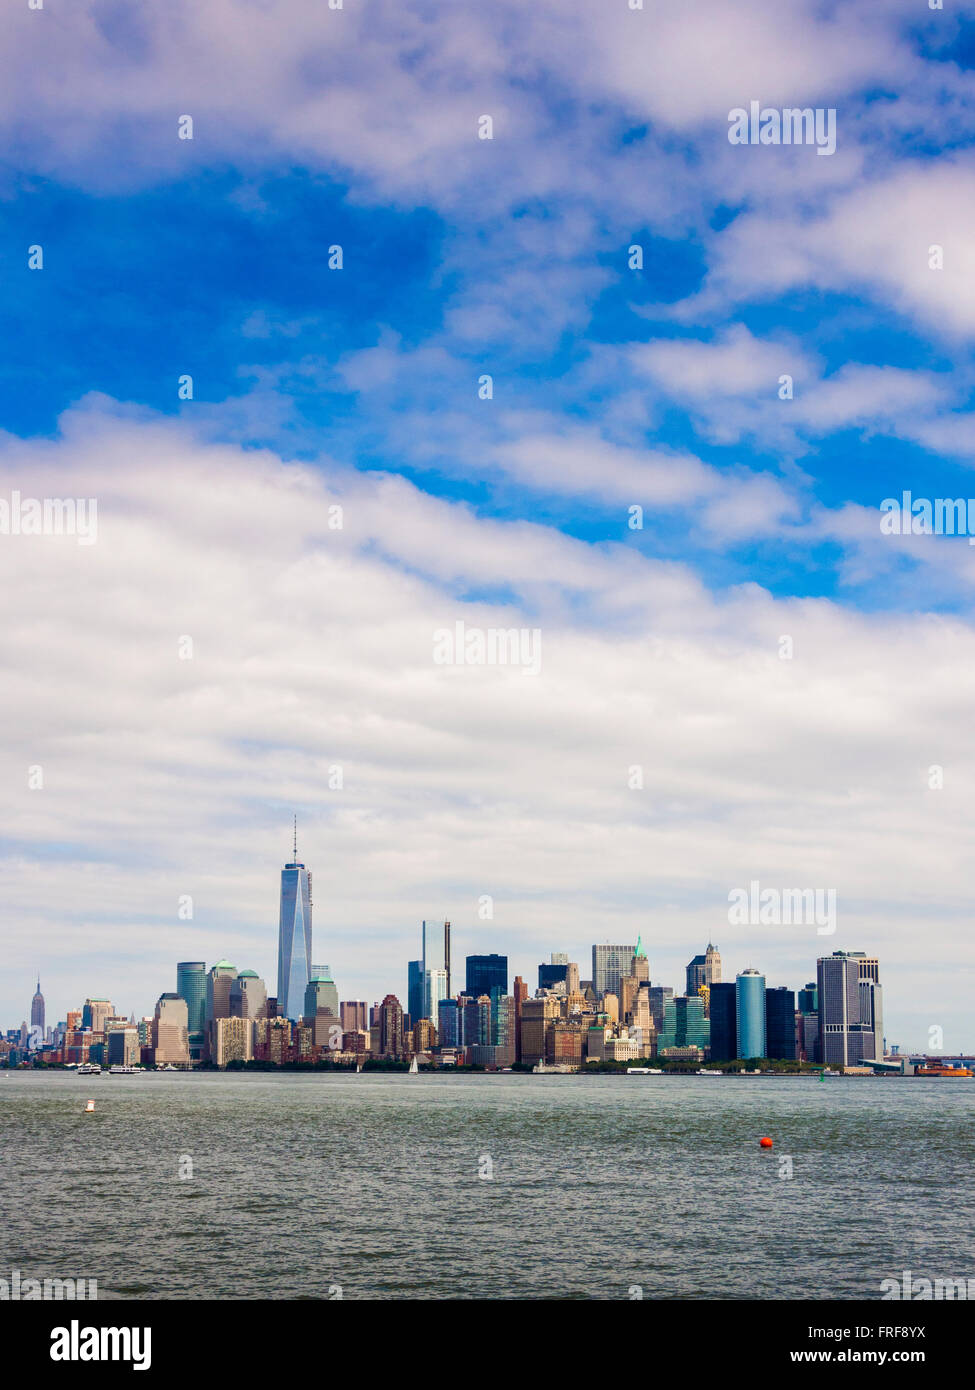 Lower Manhattan skyline vue à partir de la partie supérieure de la baie, le port de New York, USA. Banque D'Images